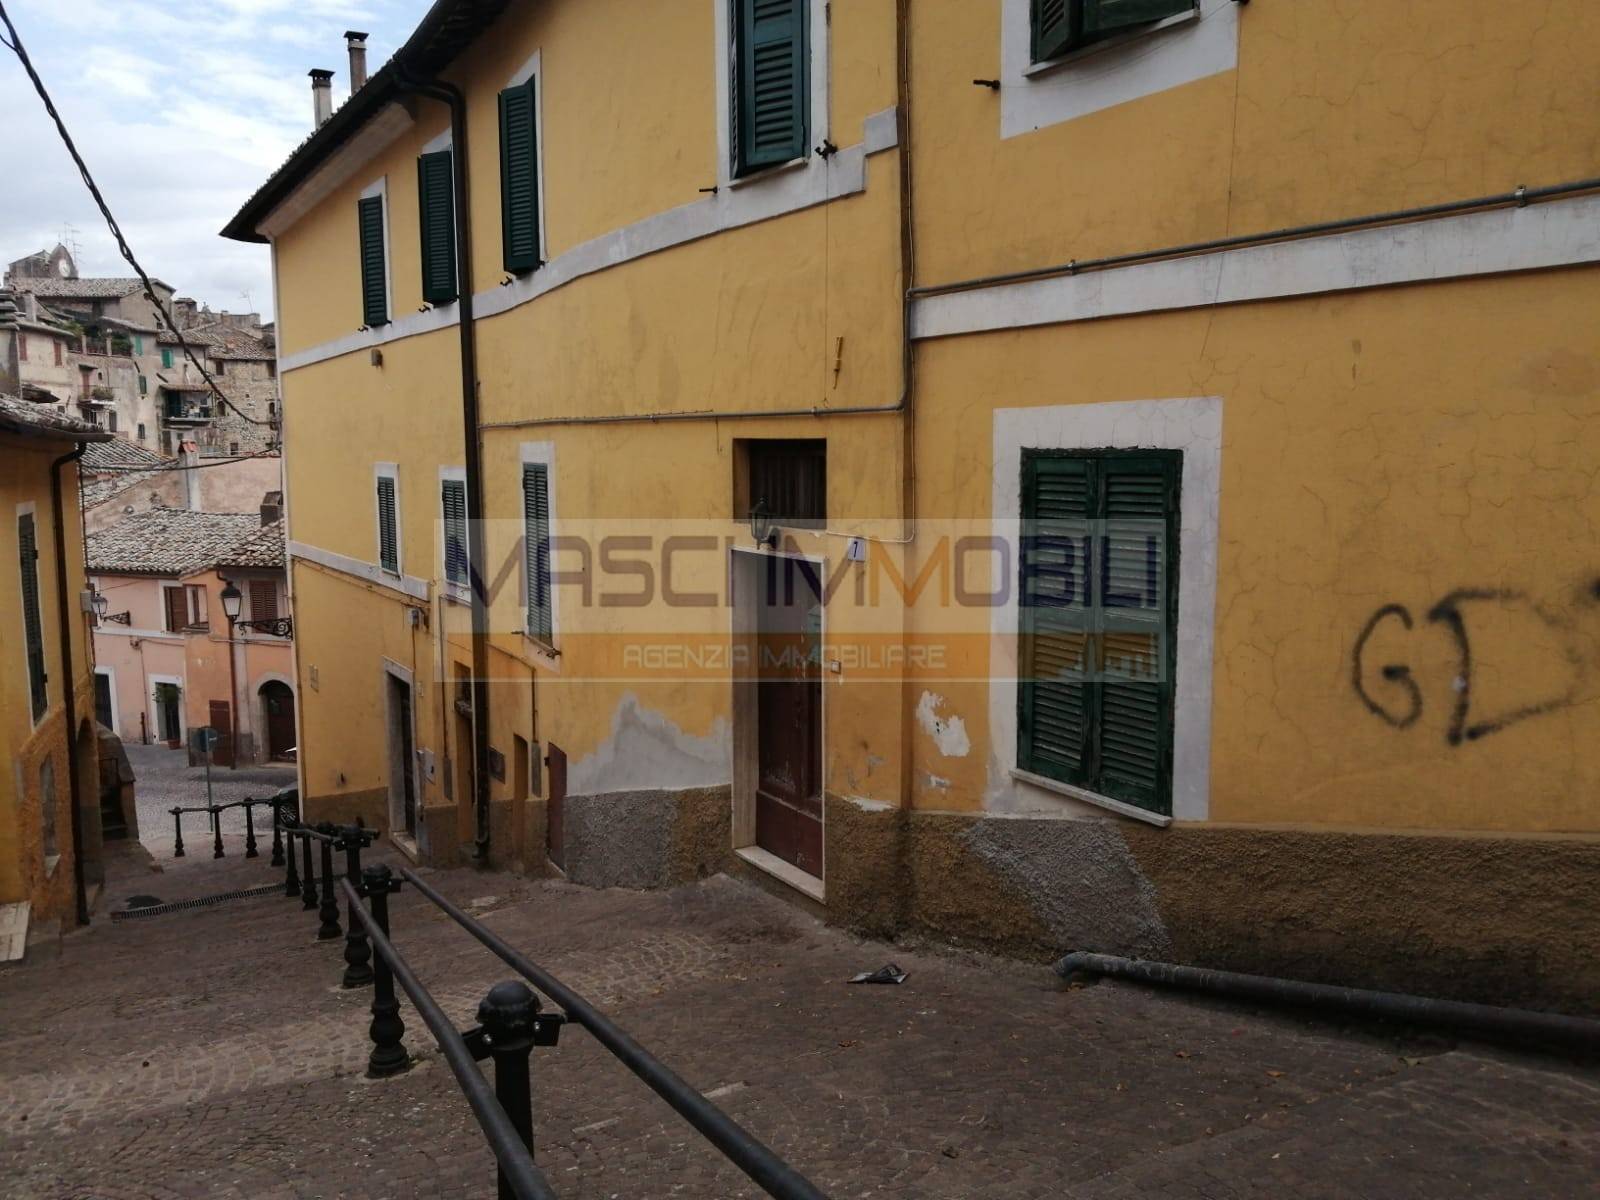 Appartamento in vendita a Nazzano, 2 locali, prezzo € 15.000 | CambioCasa.it